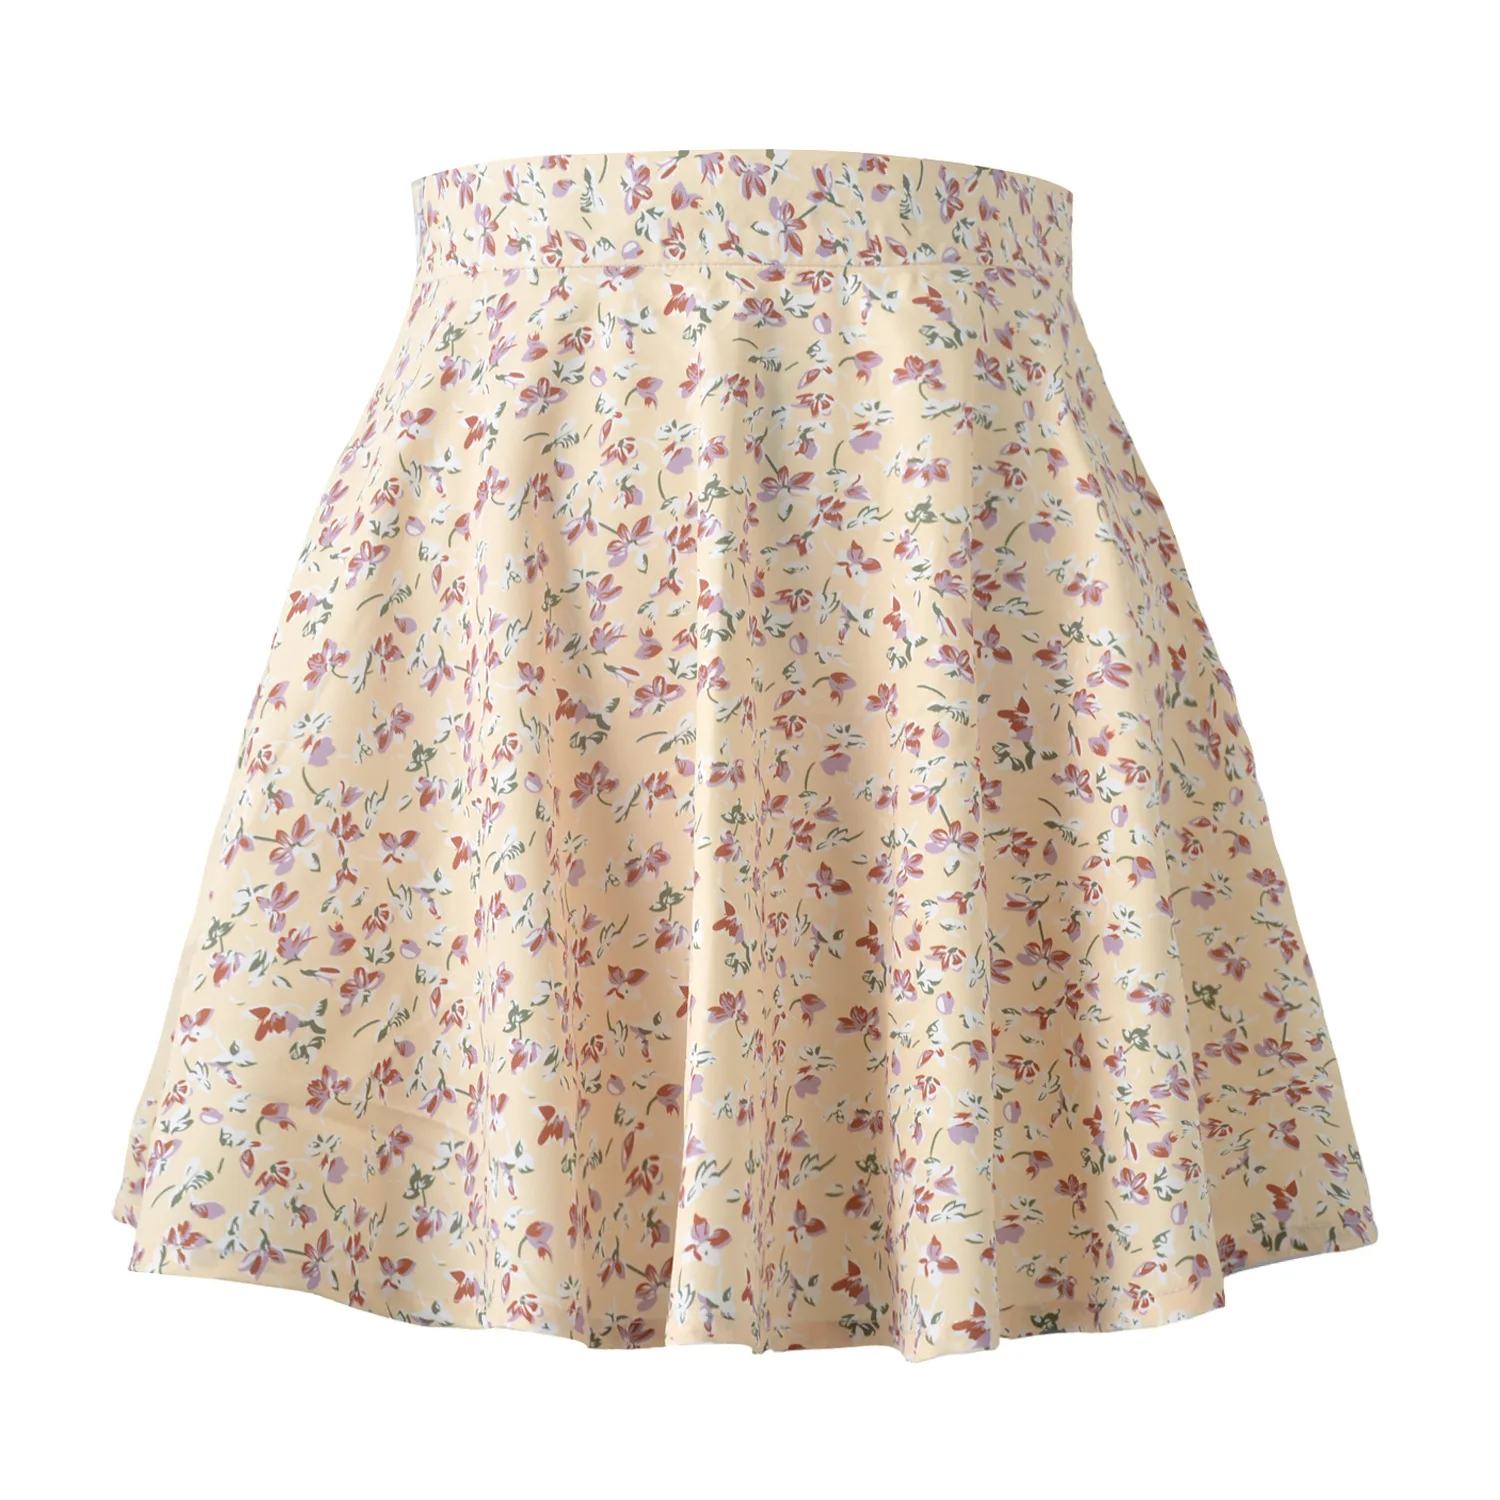 New style women's European and American floral skirt high-waist umbrella skirt invisible zipper chiffon print short skirt women tartan skirt